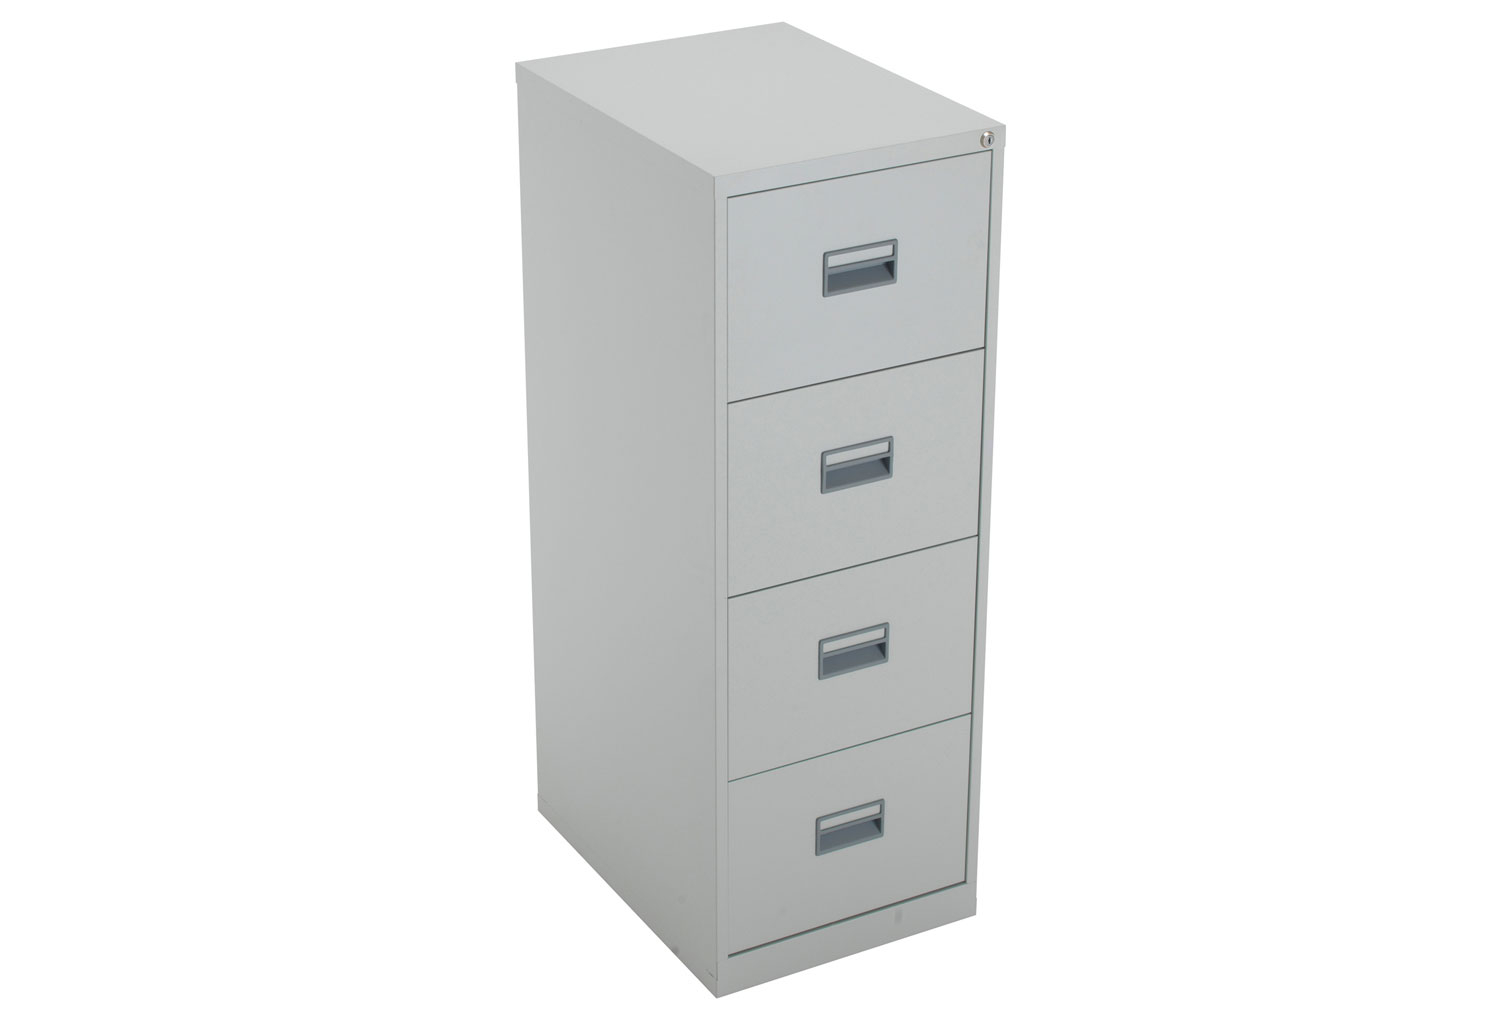 Value Line Metal Filing Cabinet, 4 Drawer - 47wx62dx130h (cm), Grey